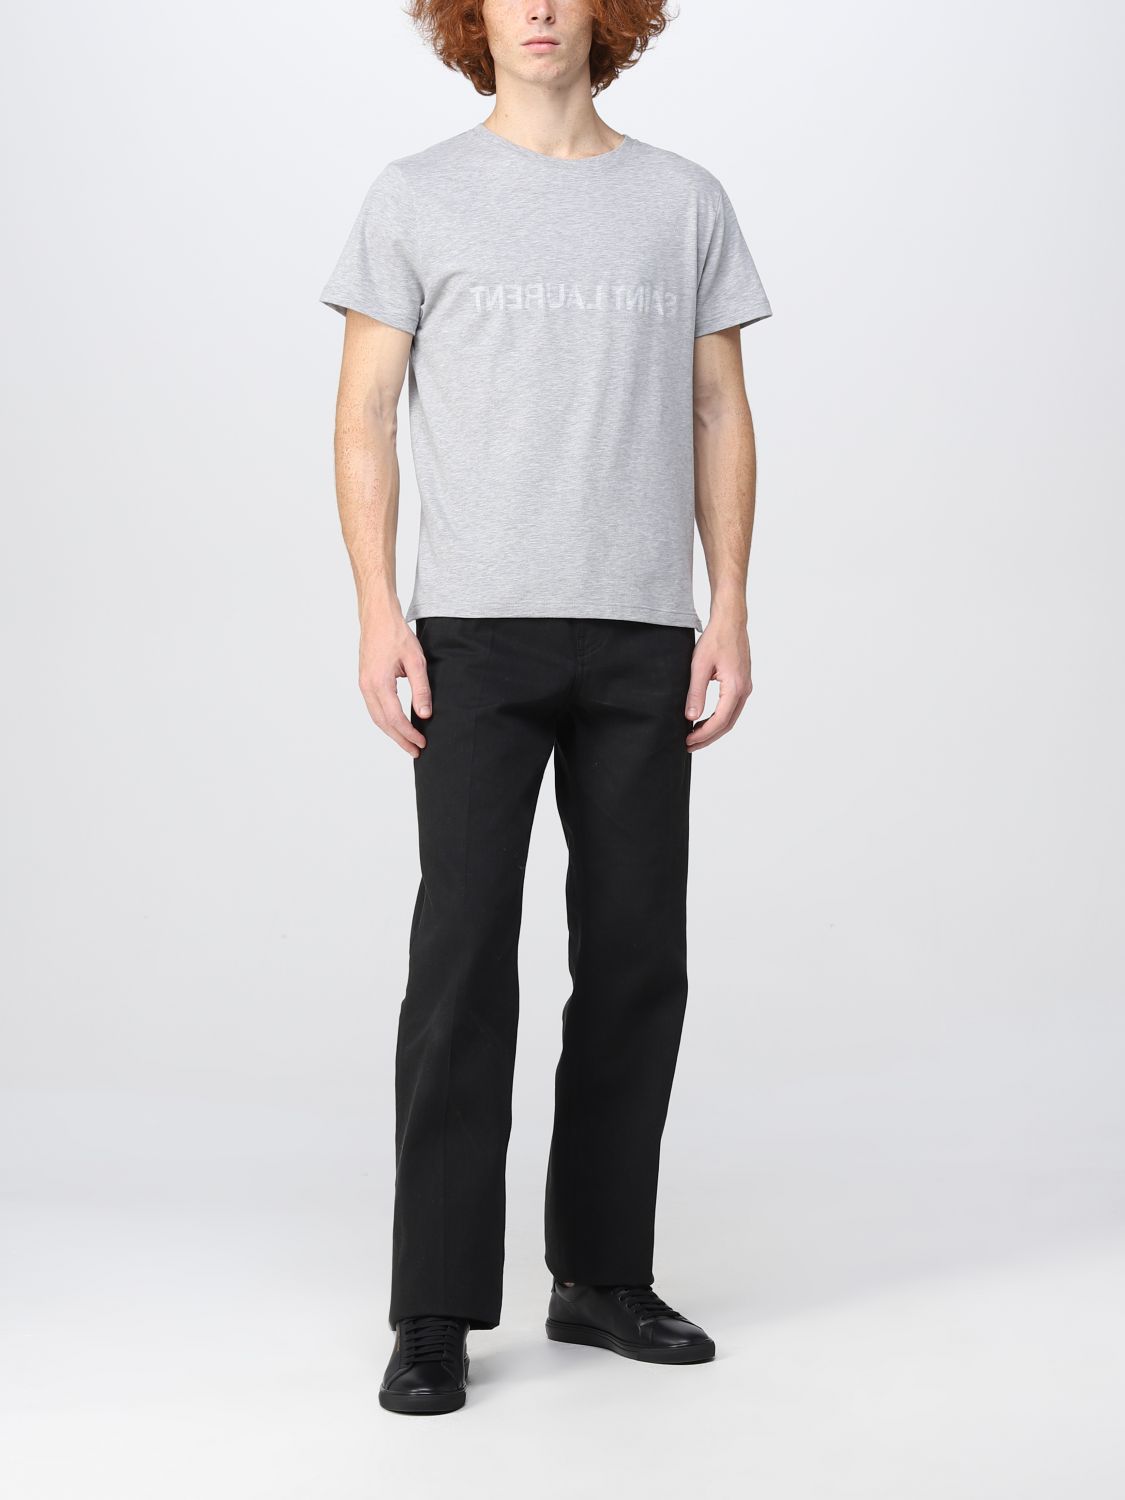 Tシャツ サンローラン: Tシャツ Saint Laurent メンズ グレー 2